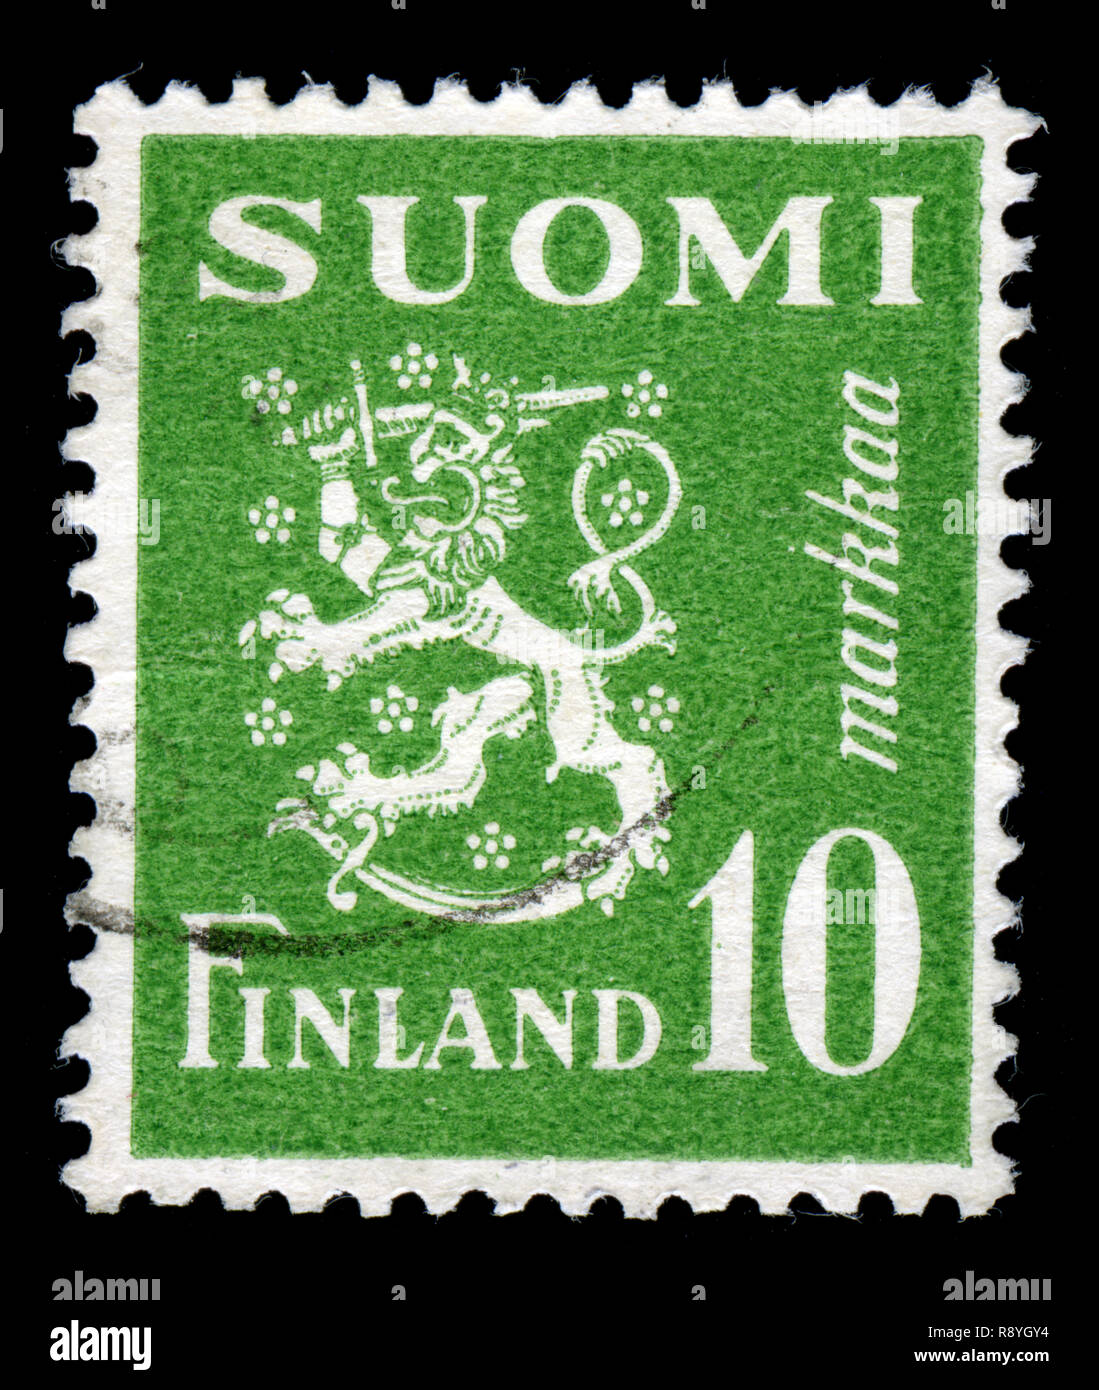 Timbre-poste de la Finlande dans le modèle 1930 Lion série émise en 1952 Banque D'Images